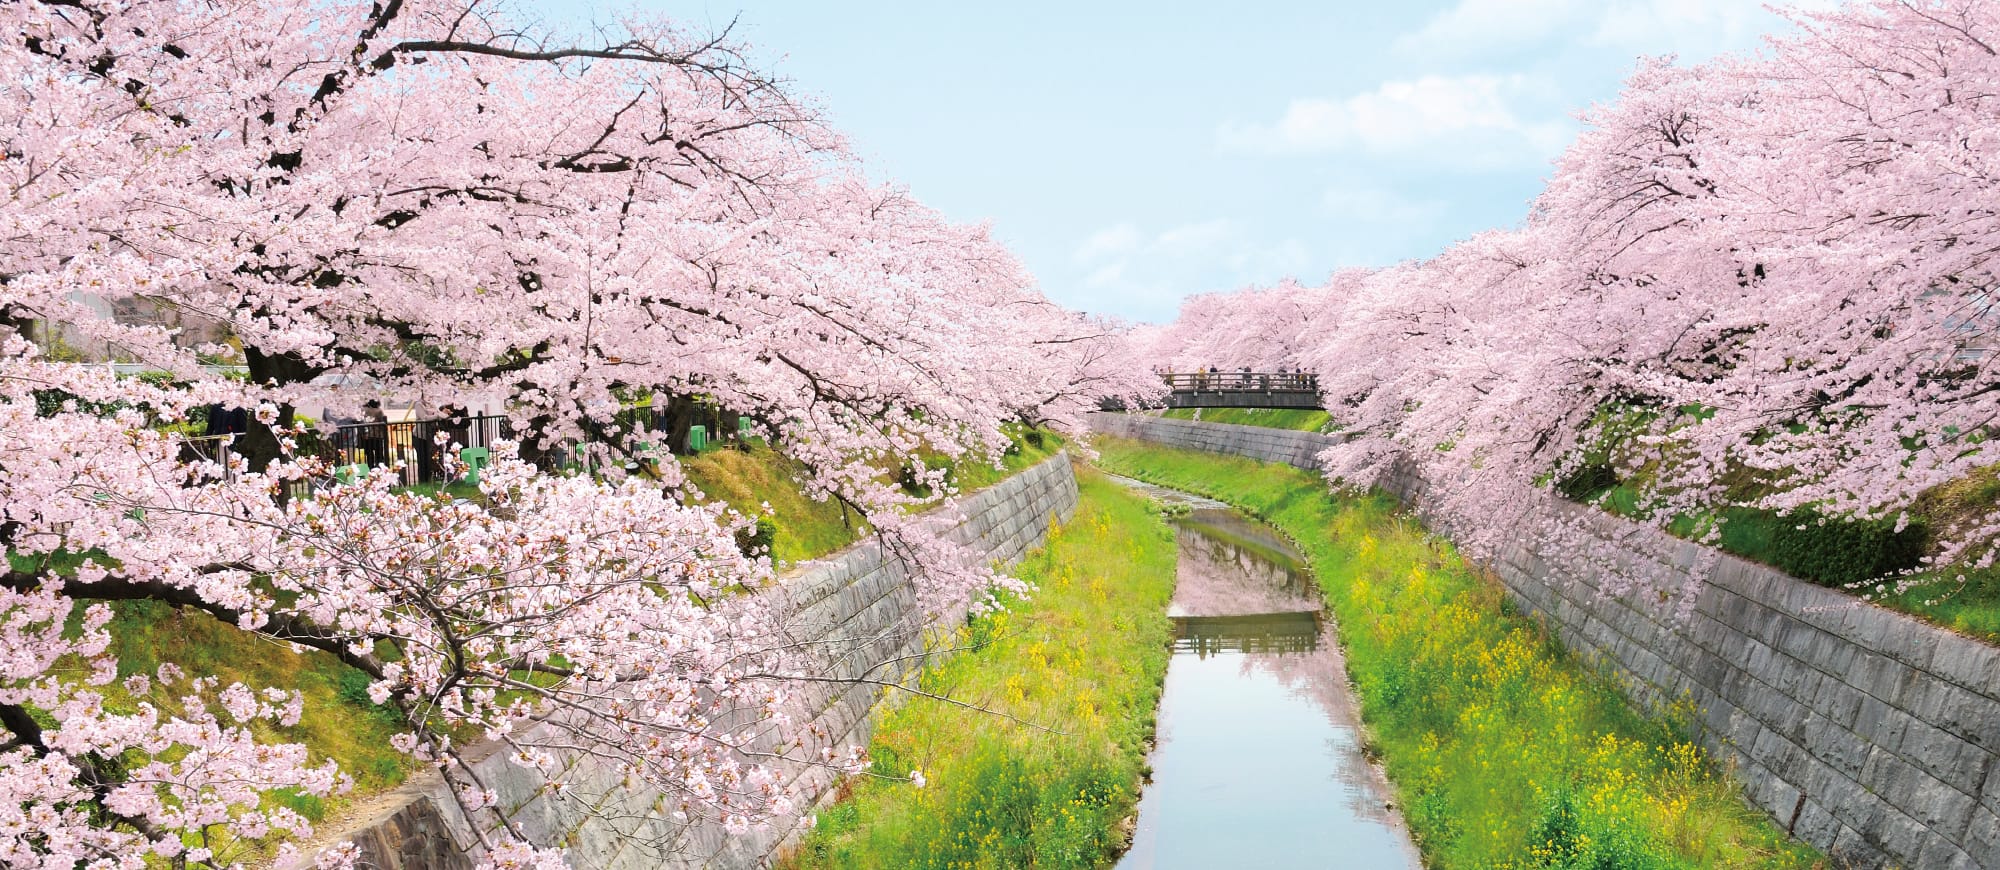 身近に四季を感じる、桜の名所山崎川に近接。